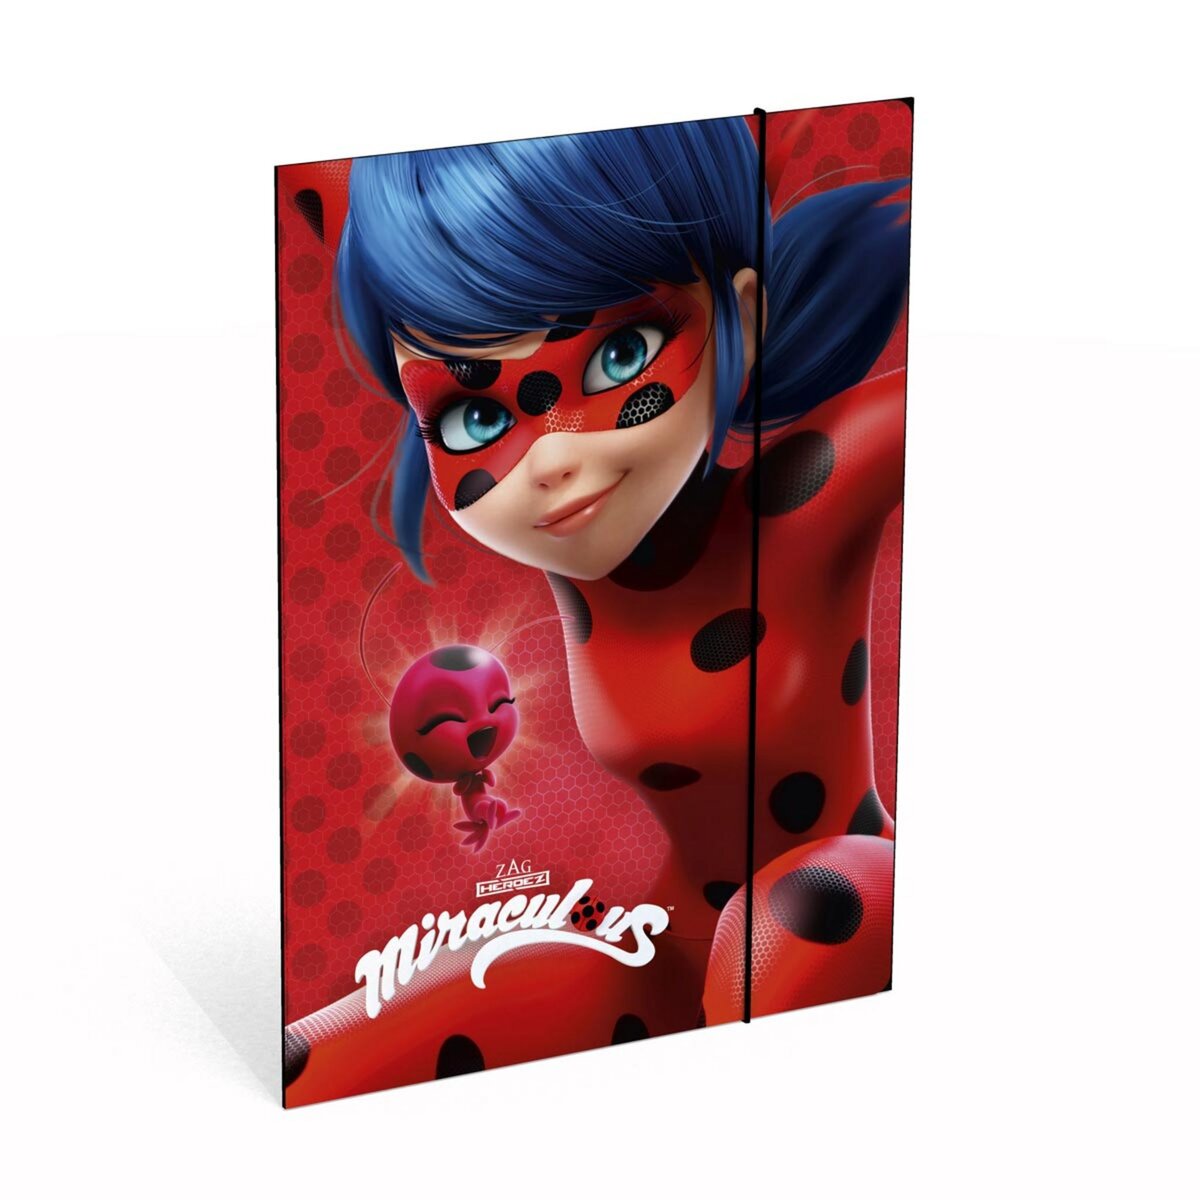  Chemise cartonnée à élastique Miraculous A4 rouge Ladybug